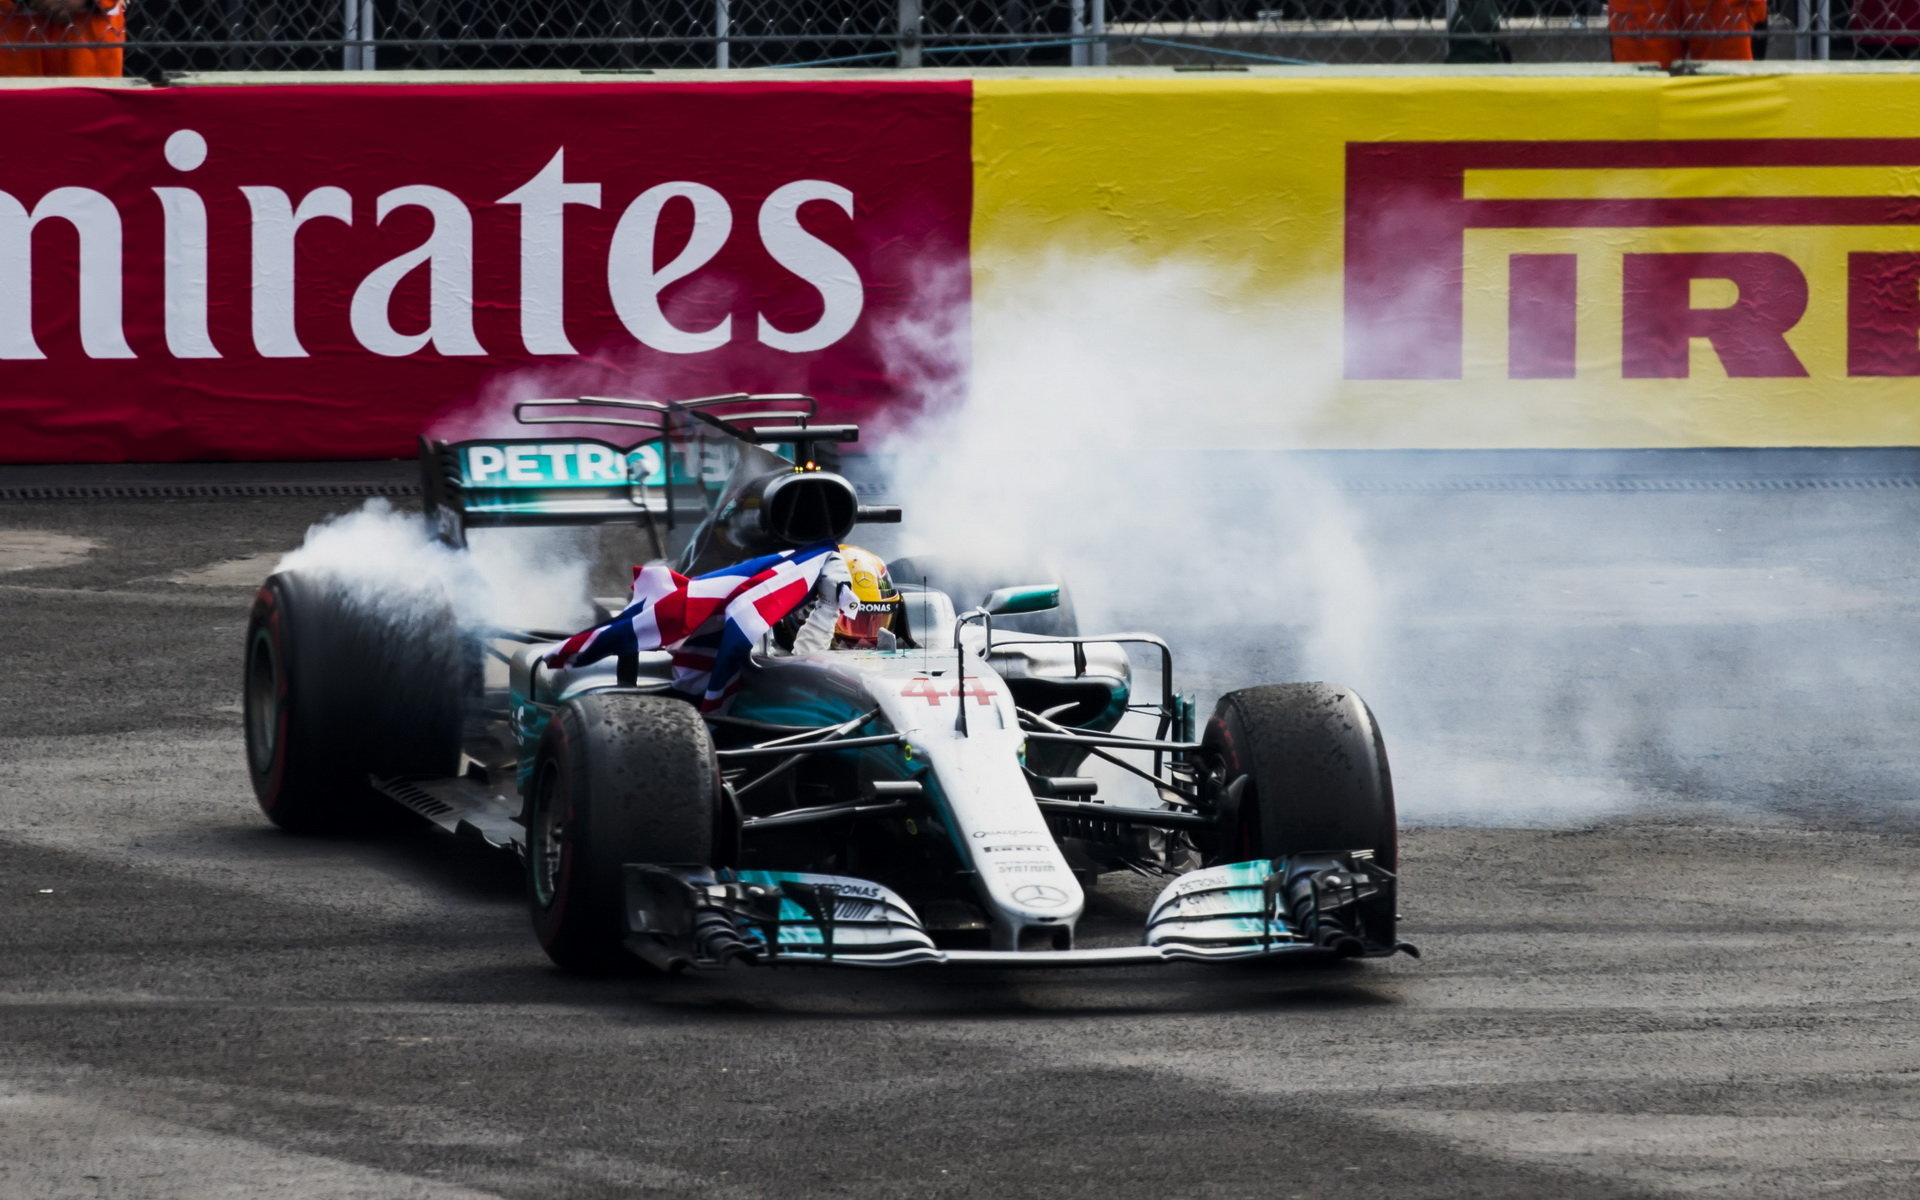 Letošní trofeje podle Rosberga získá opět Hamilton s Mercedesem